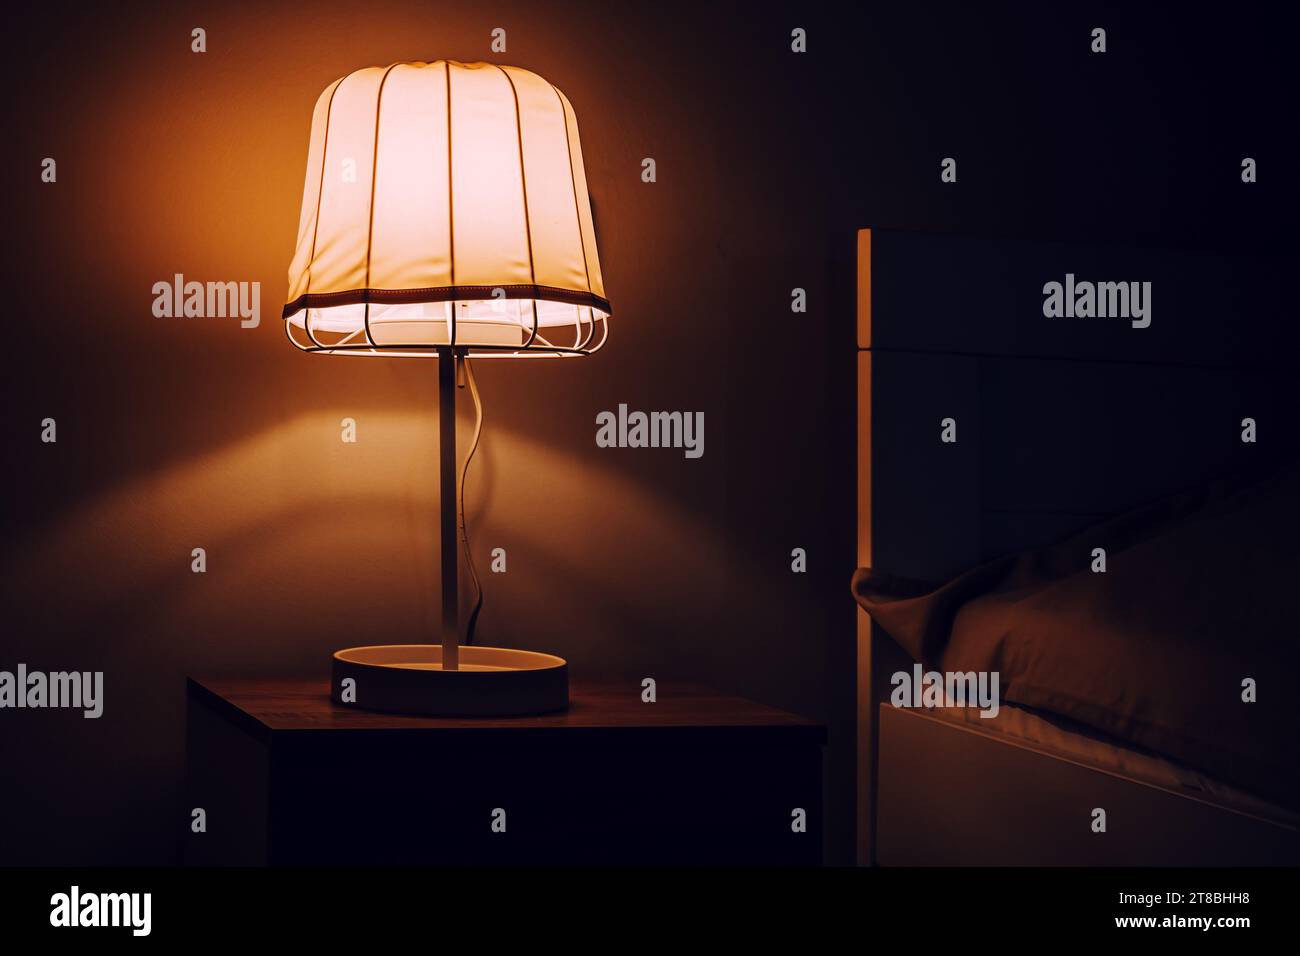 Lampe de chevet de table de nuit dans la chambre à coucher la nuit, mise au point sélective Banque D'Images